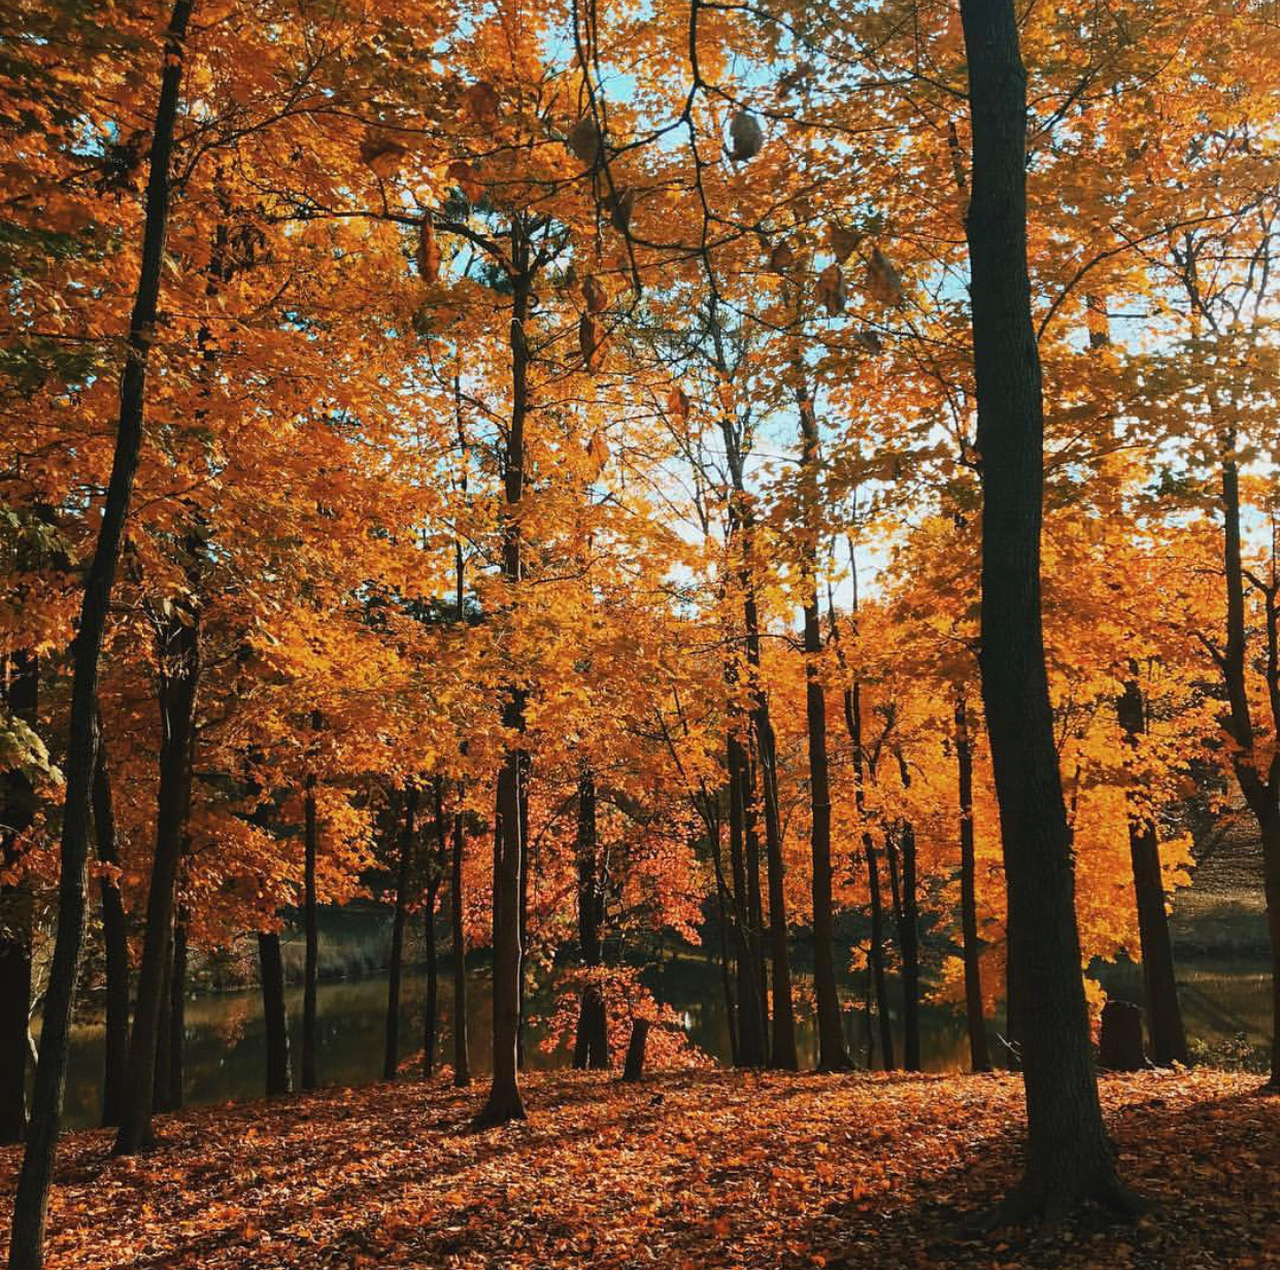 Fall Colors at Mahr Park Arboretum in Madisonville